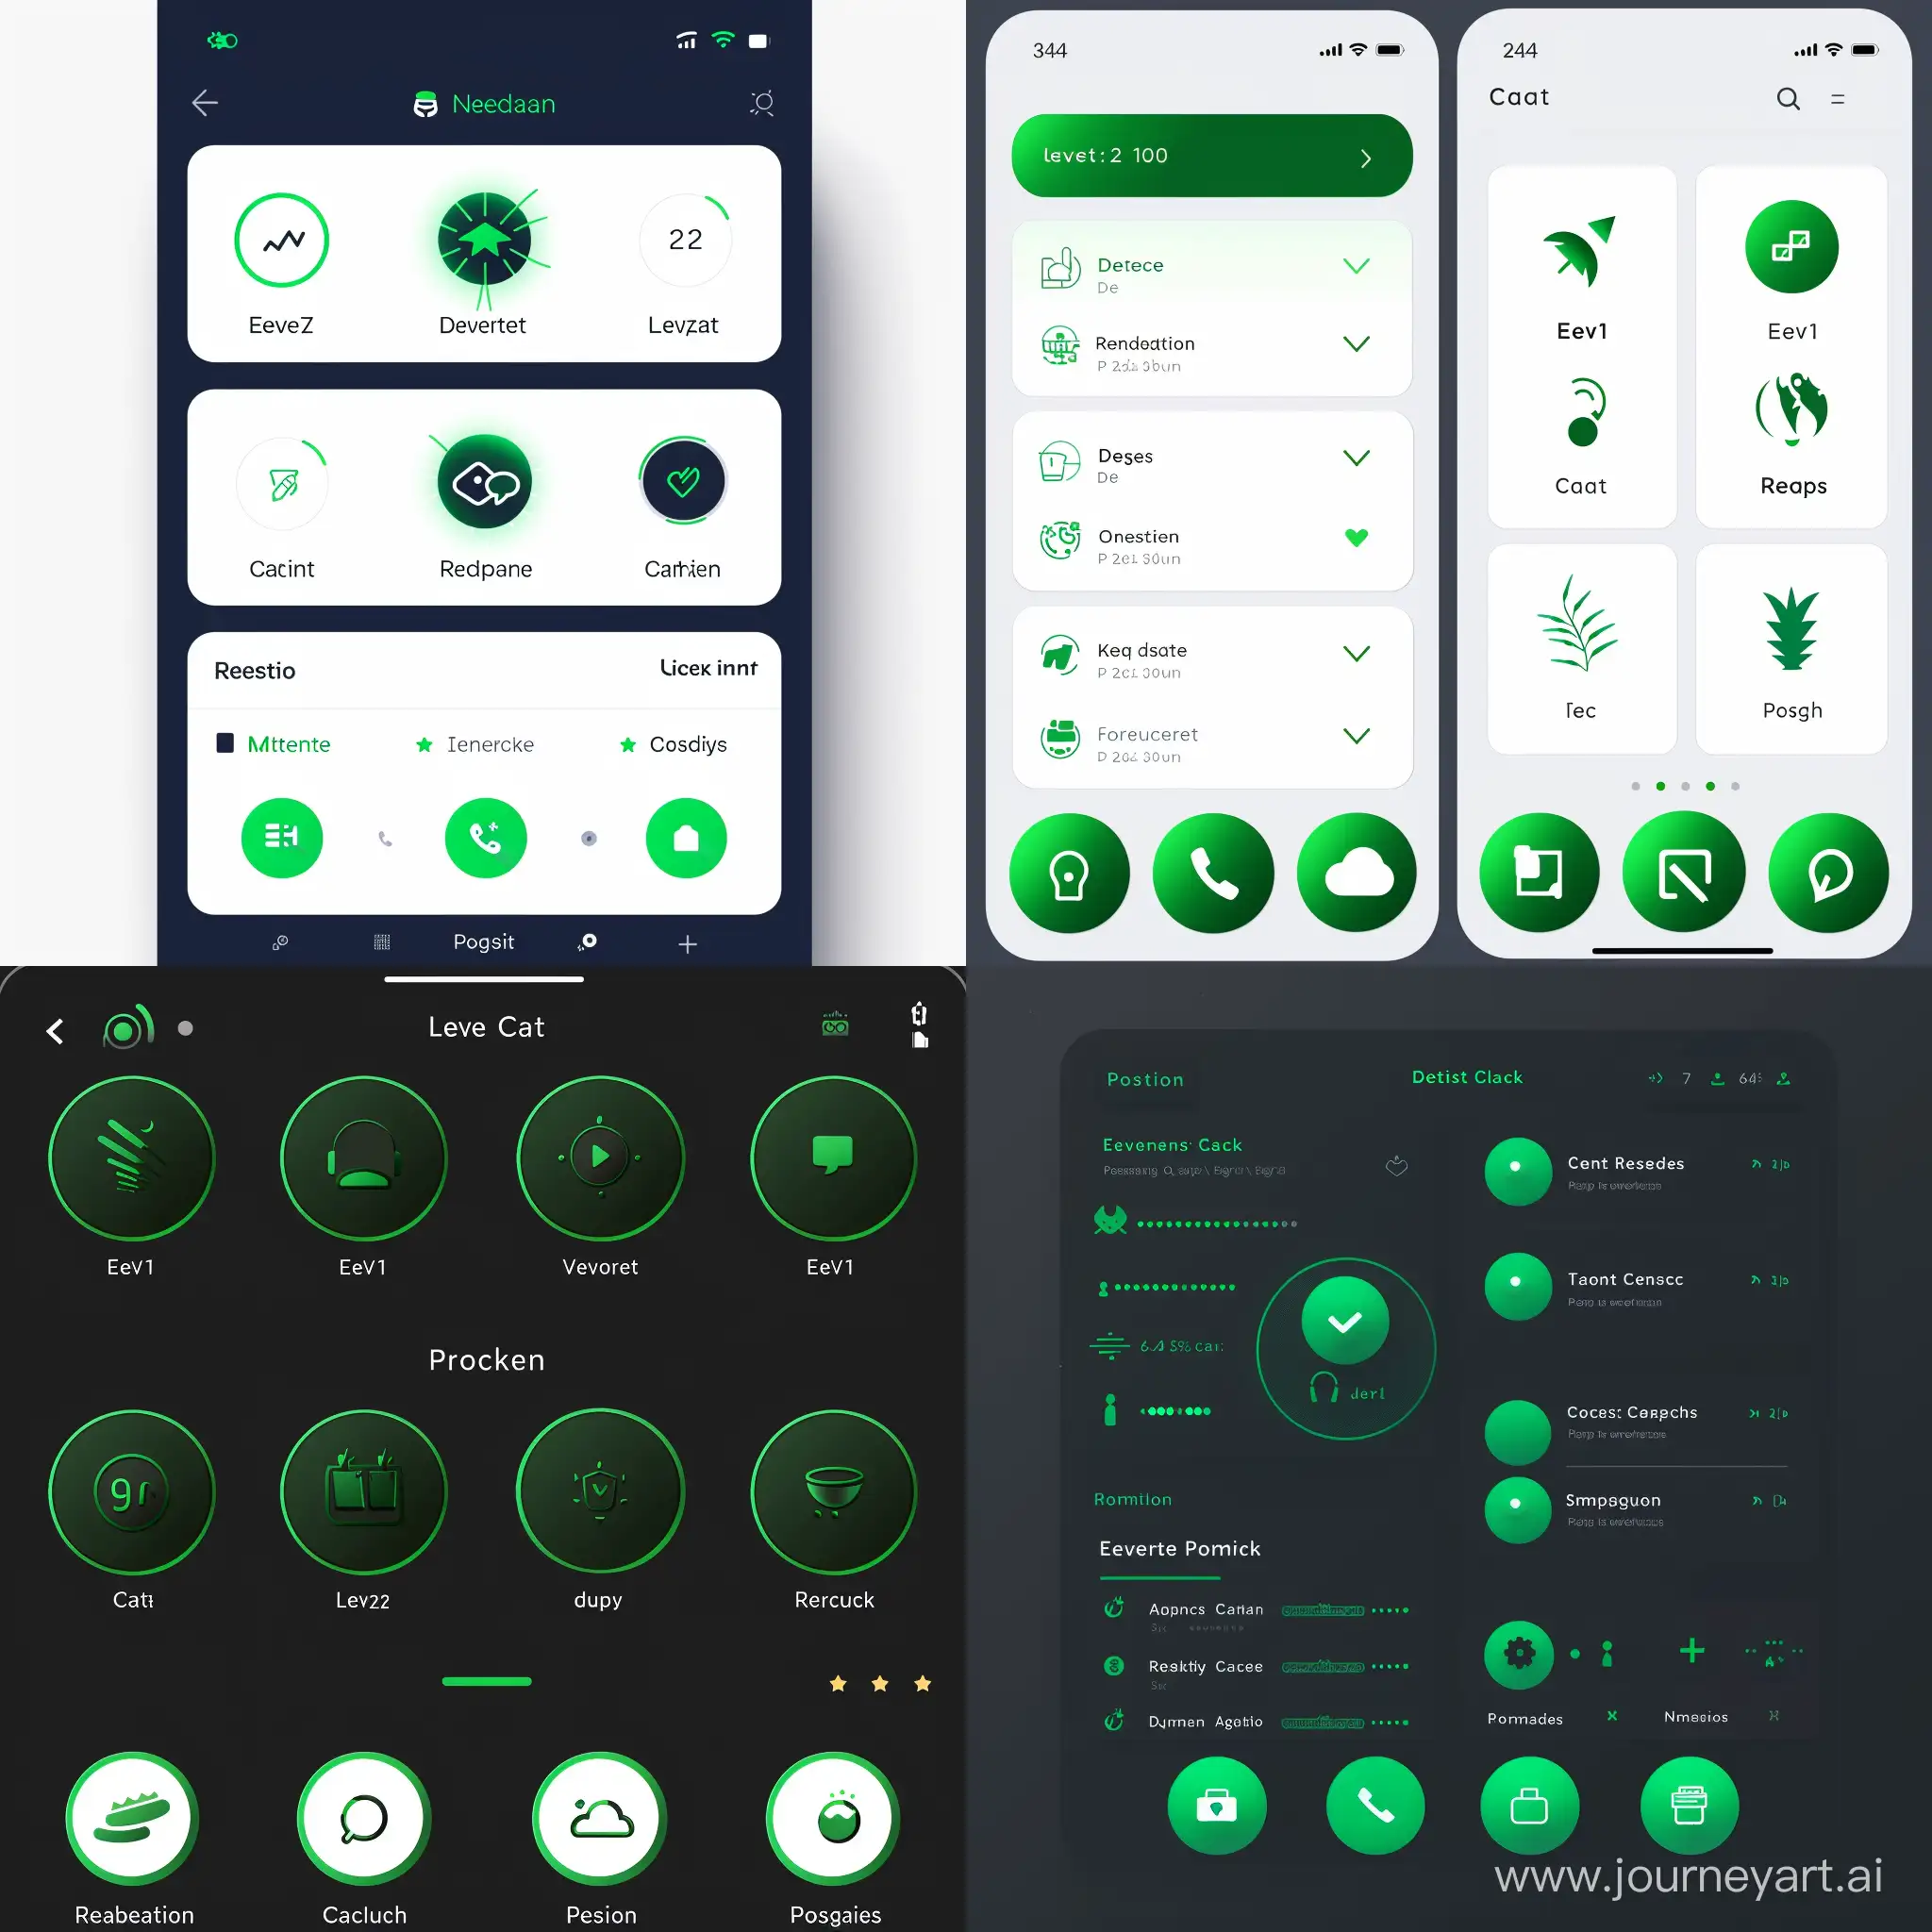 Интерфейс приложения. Внизу 4 иконки мероприятия, чаты, репутация, проекты. Зелёного цвета круглые иконки.